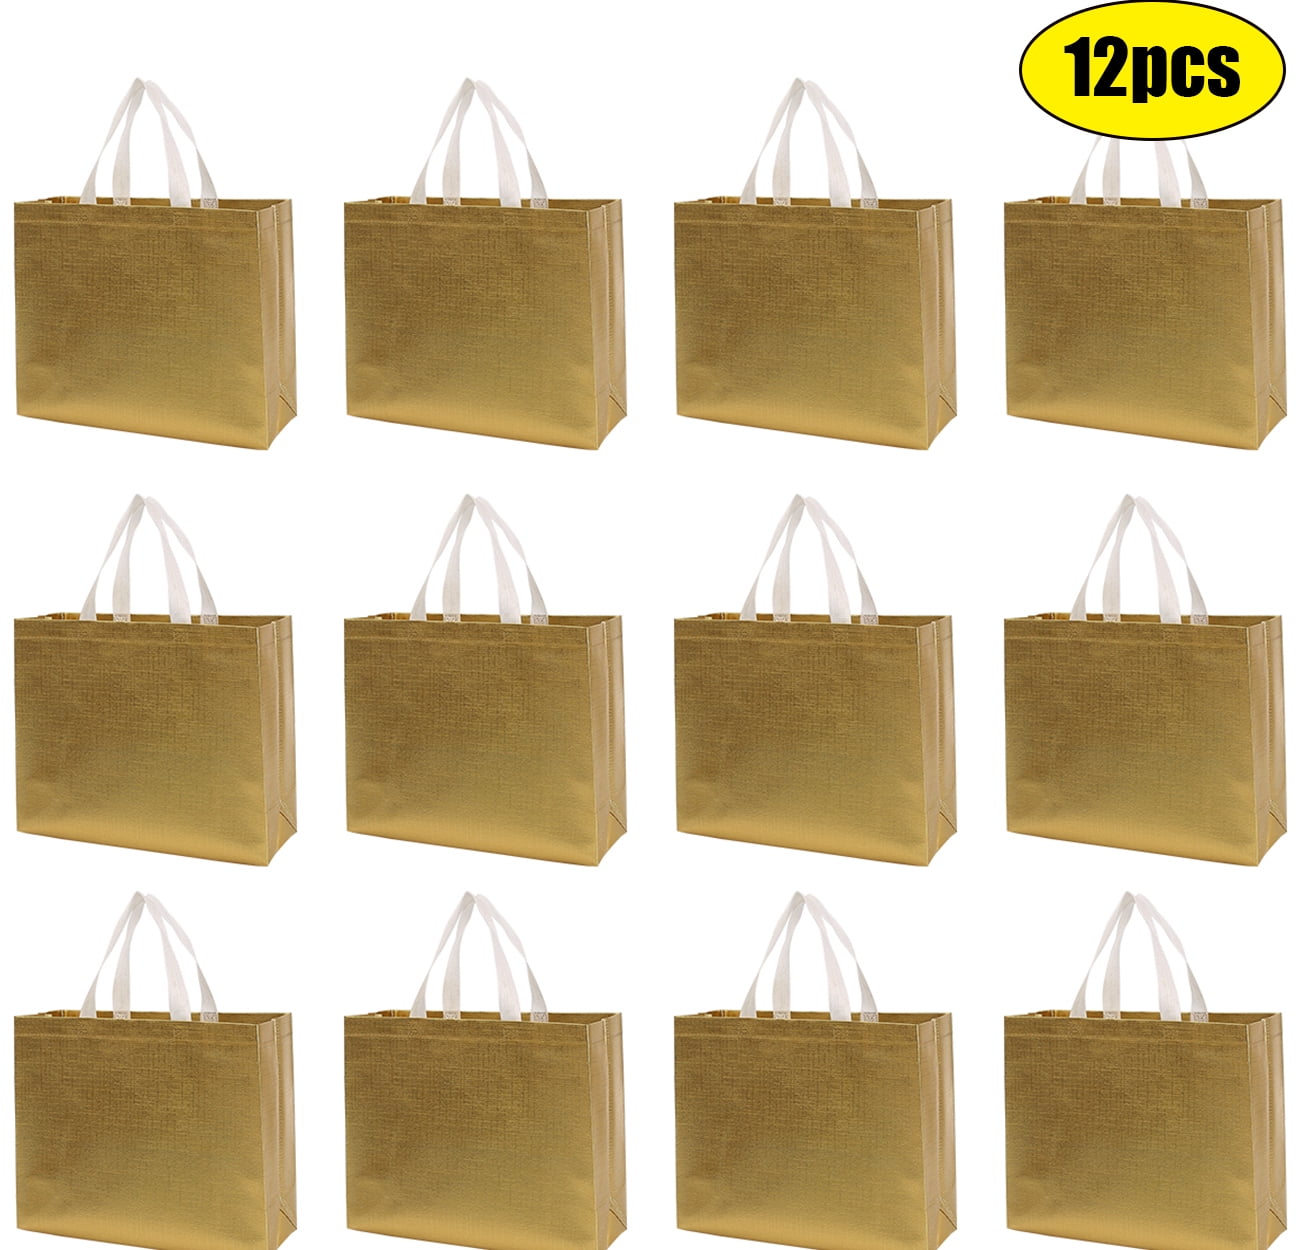 Unique Bargains Paper Gift Bag Pack Mango Storage Bag for Party Favor 50pcs Orange 4.8x3x9.1 inch